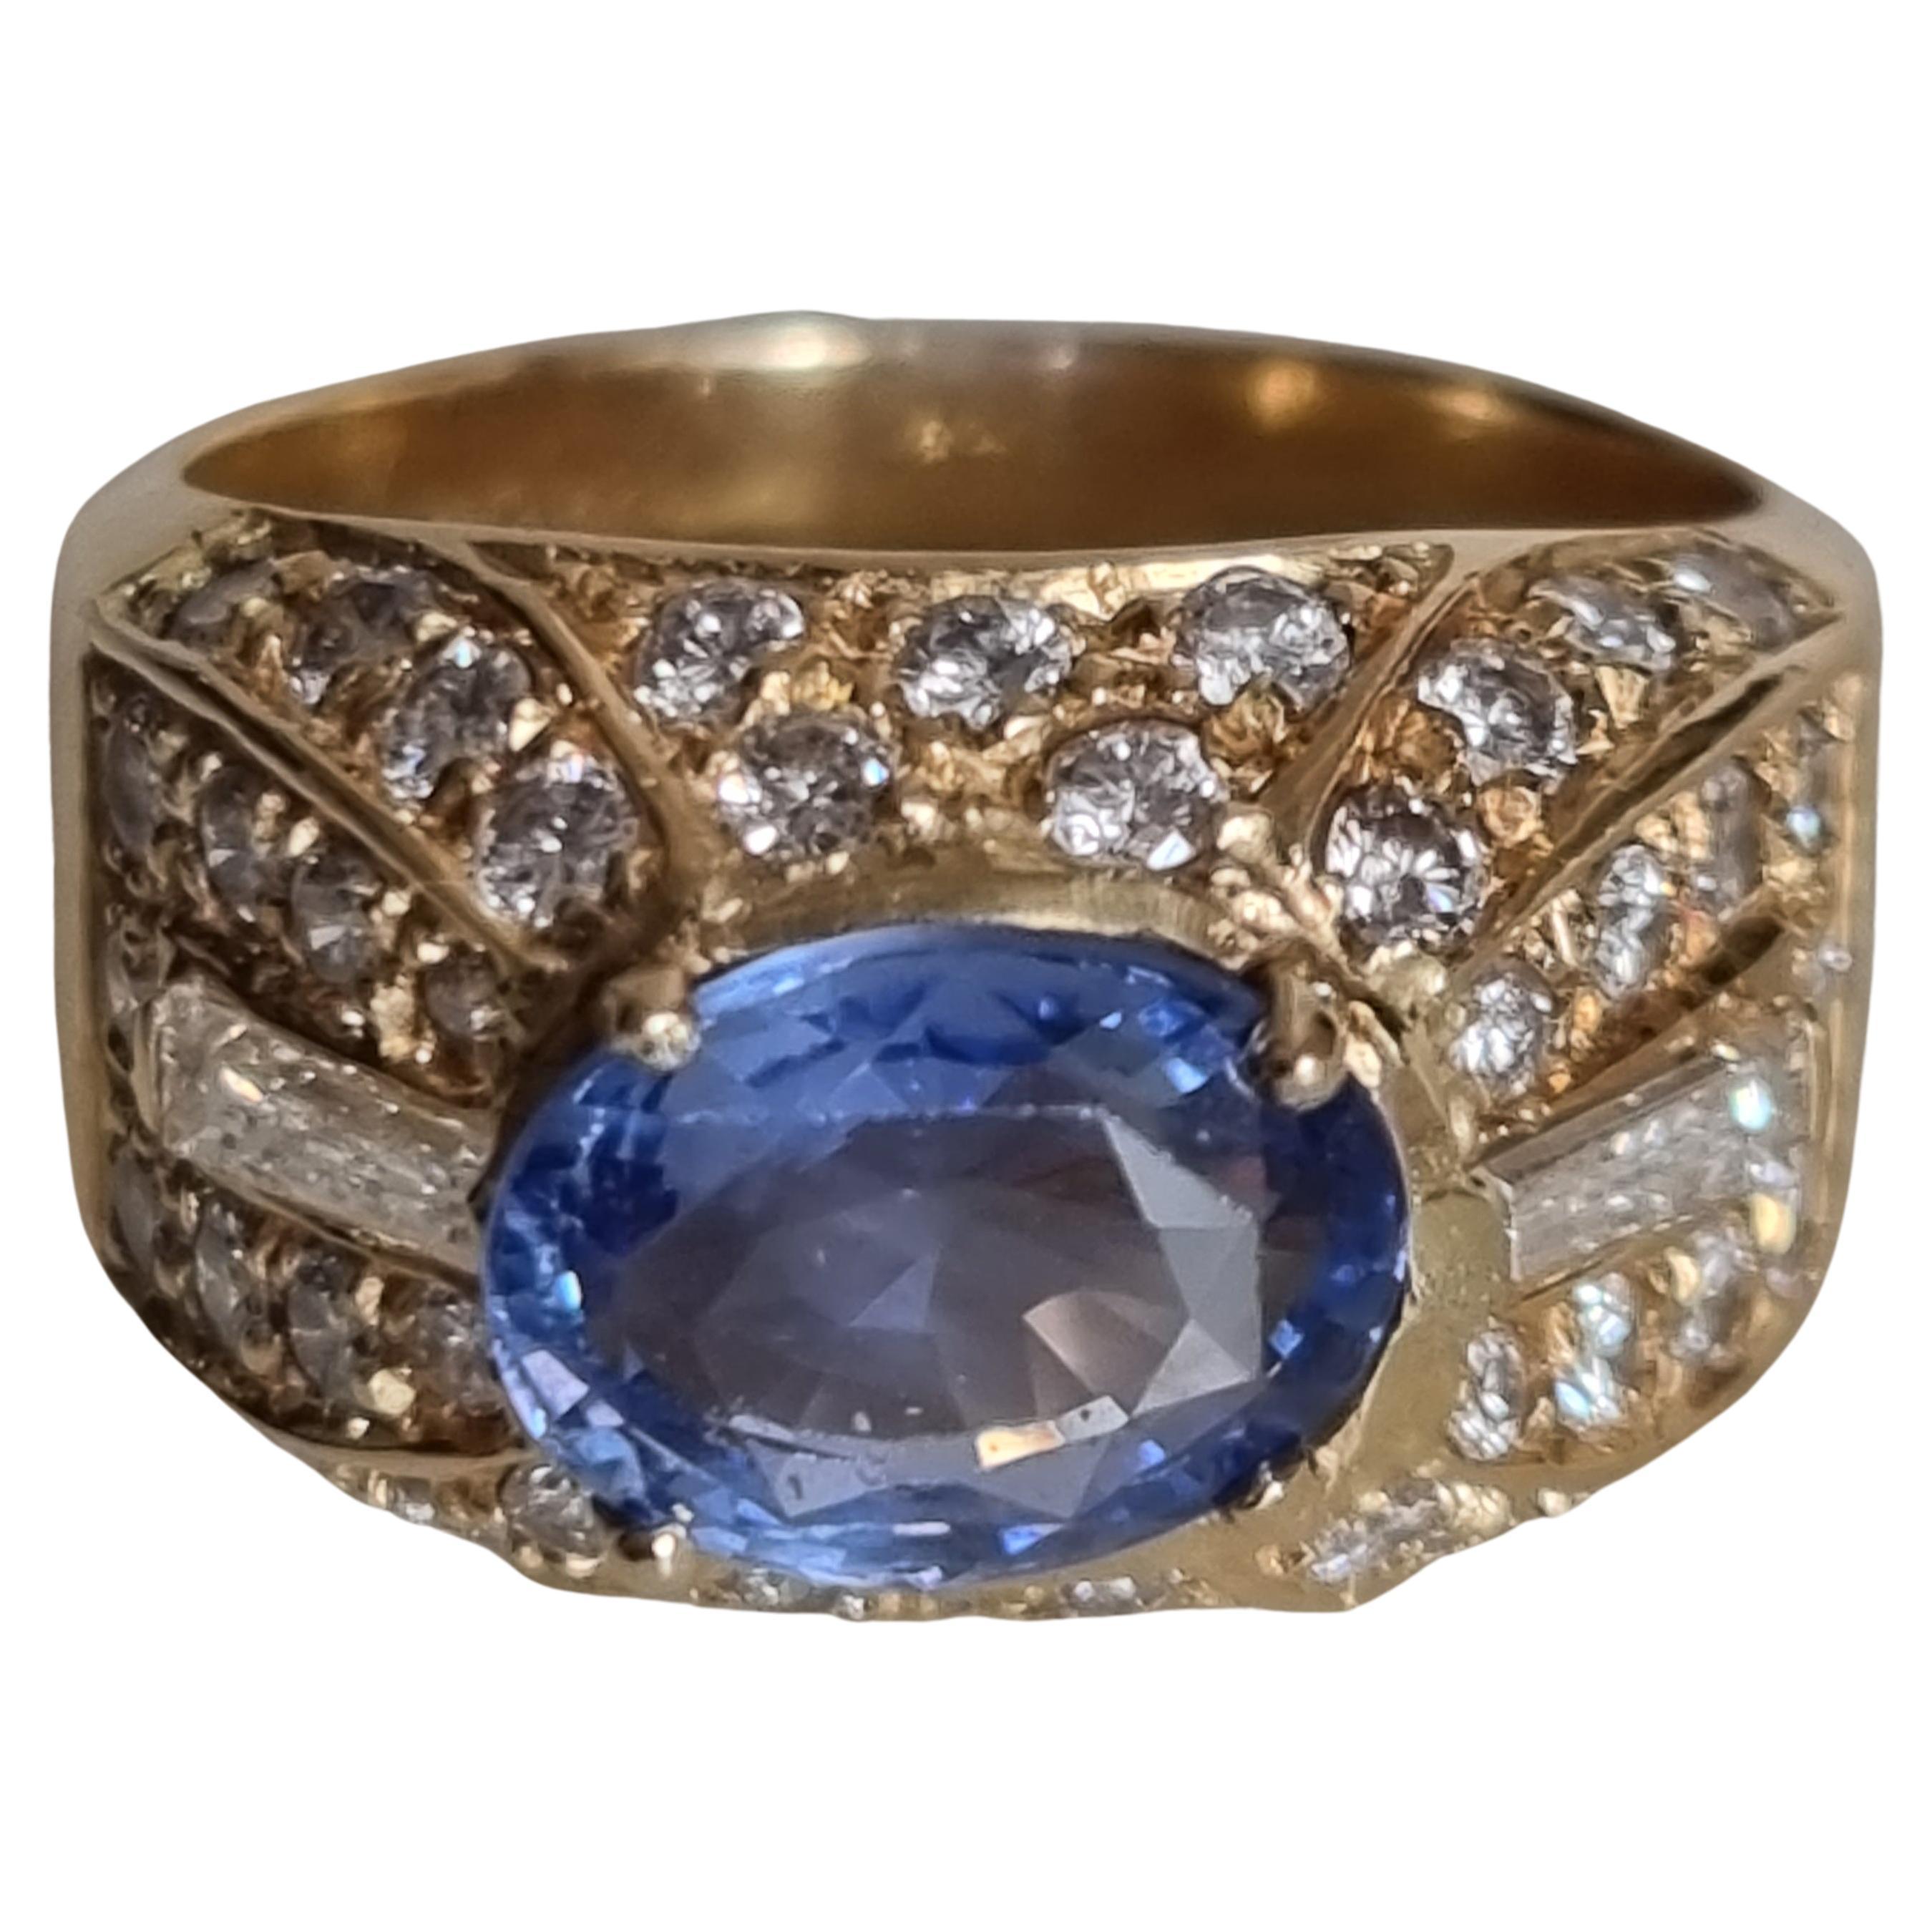 Bague vintage en saphir bleu et diamant bombé, signée par FÜRST (Rome) en or jaune 18 carats.
Bague vintage en saphir bleu et diamant bombé, sertie d'un saphir de taille ovale, pesant 2,10ct, au centre (8,80 X 6,88 X 4,31mm), avec 46 diamants ronds